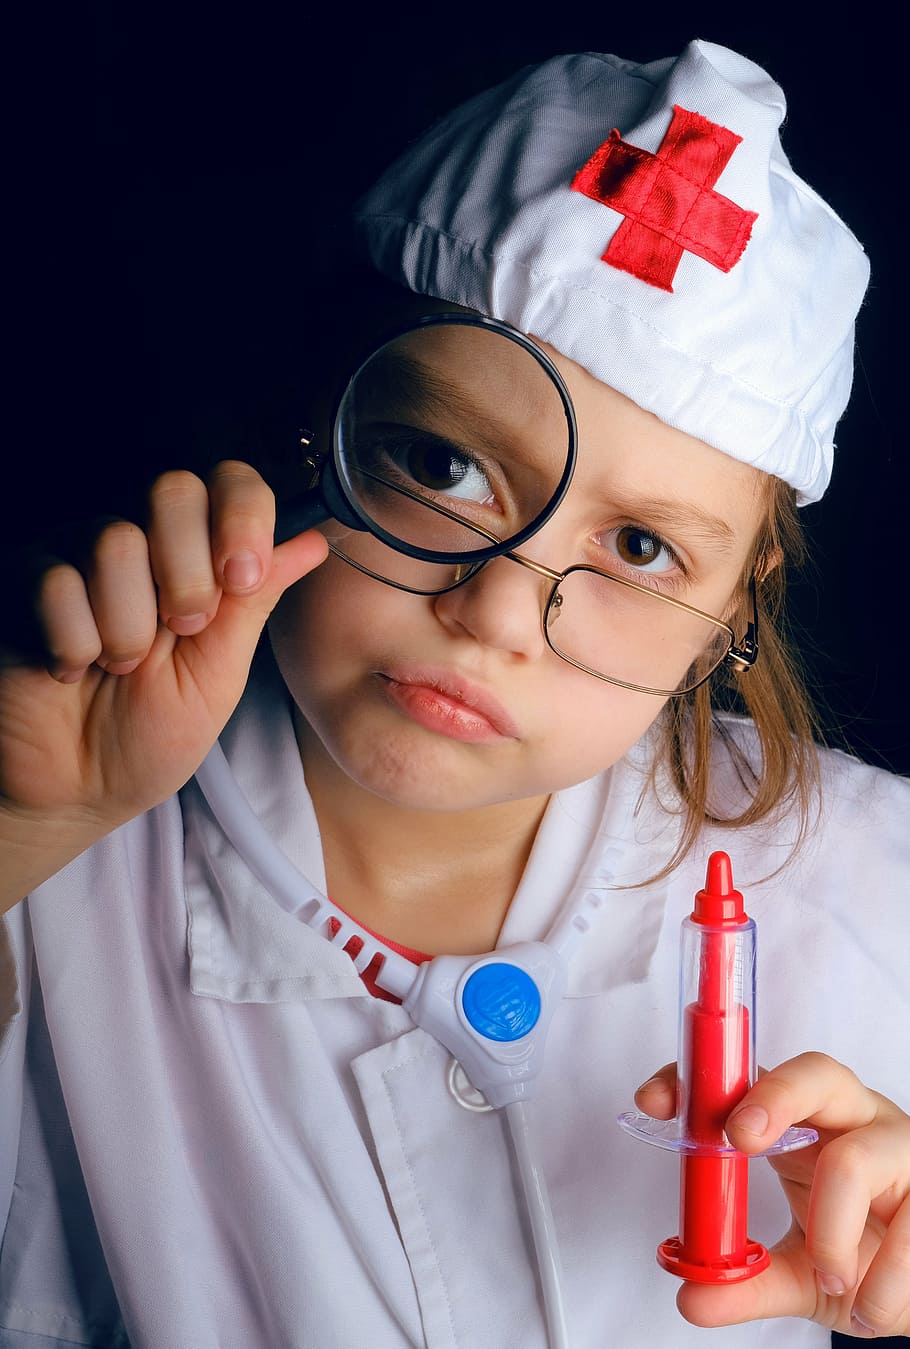 child wearing doctor costume holding syringe toy, ambulance, students